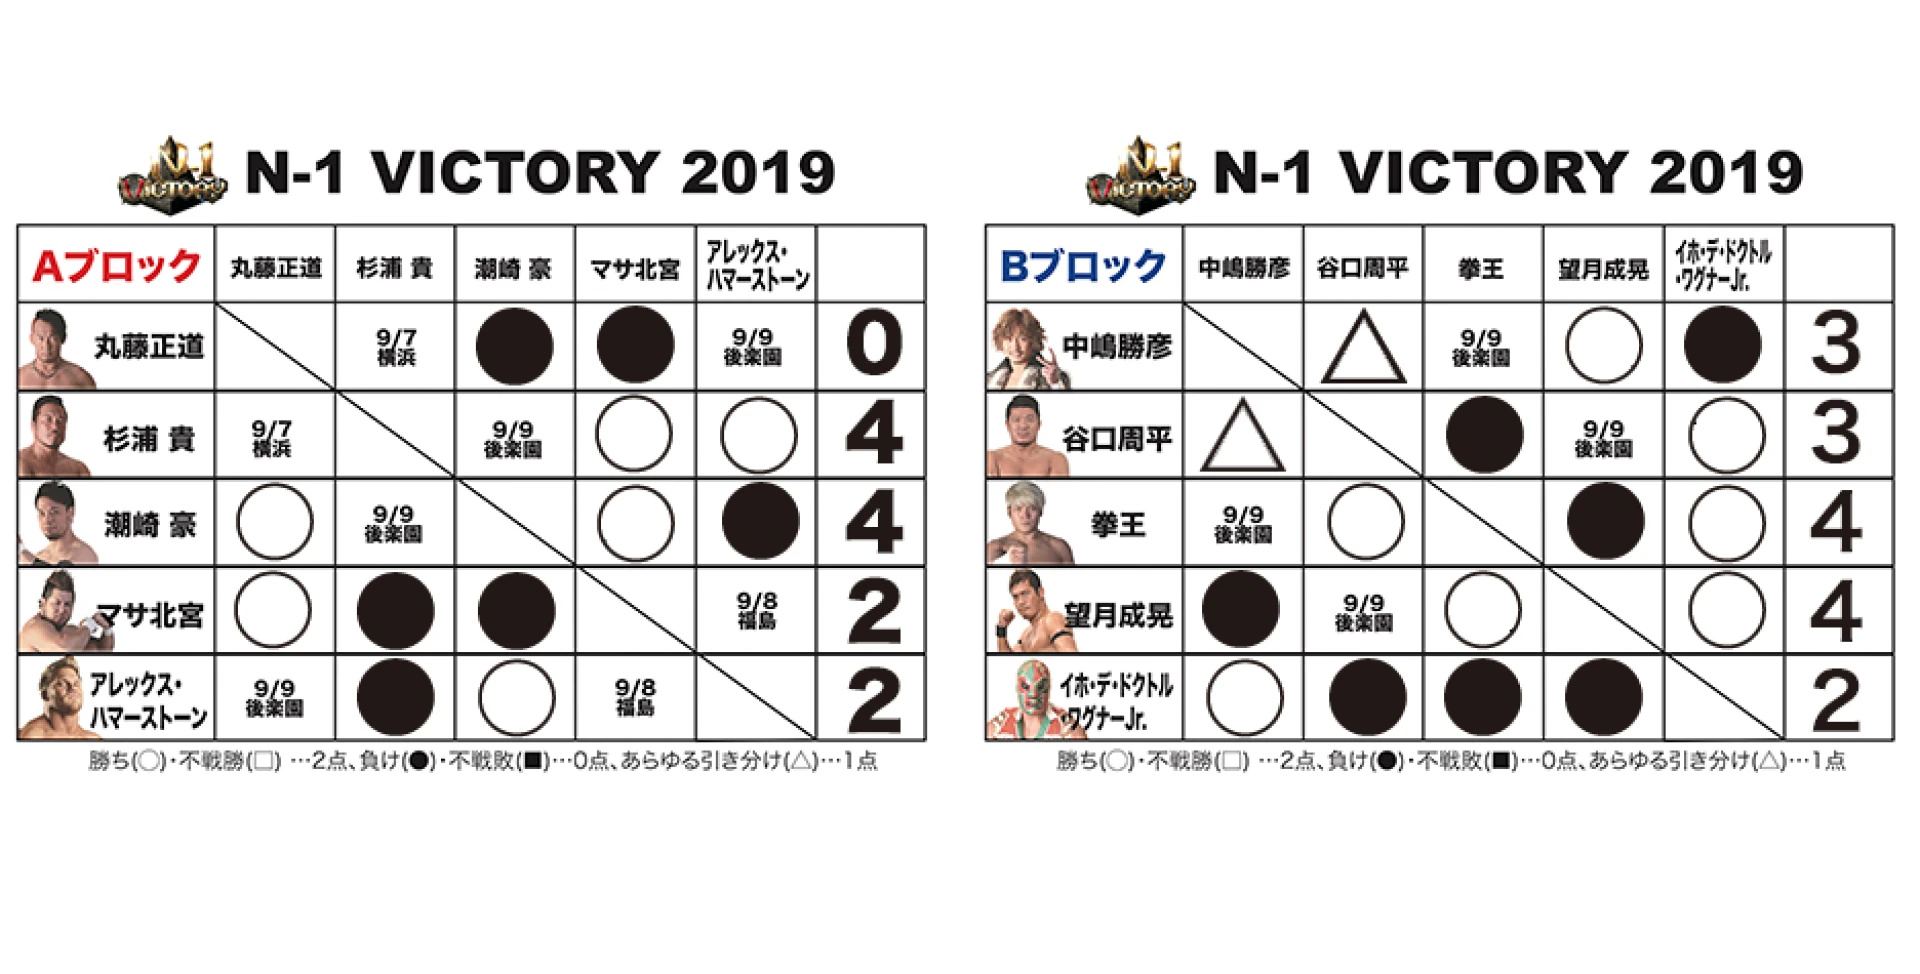 【9.6つくば大会終了時の得点状況】『N-1 VICTORY 2019』得点表